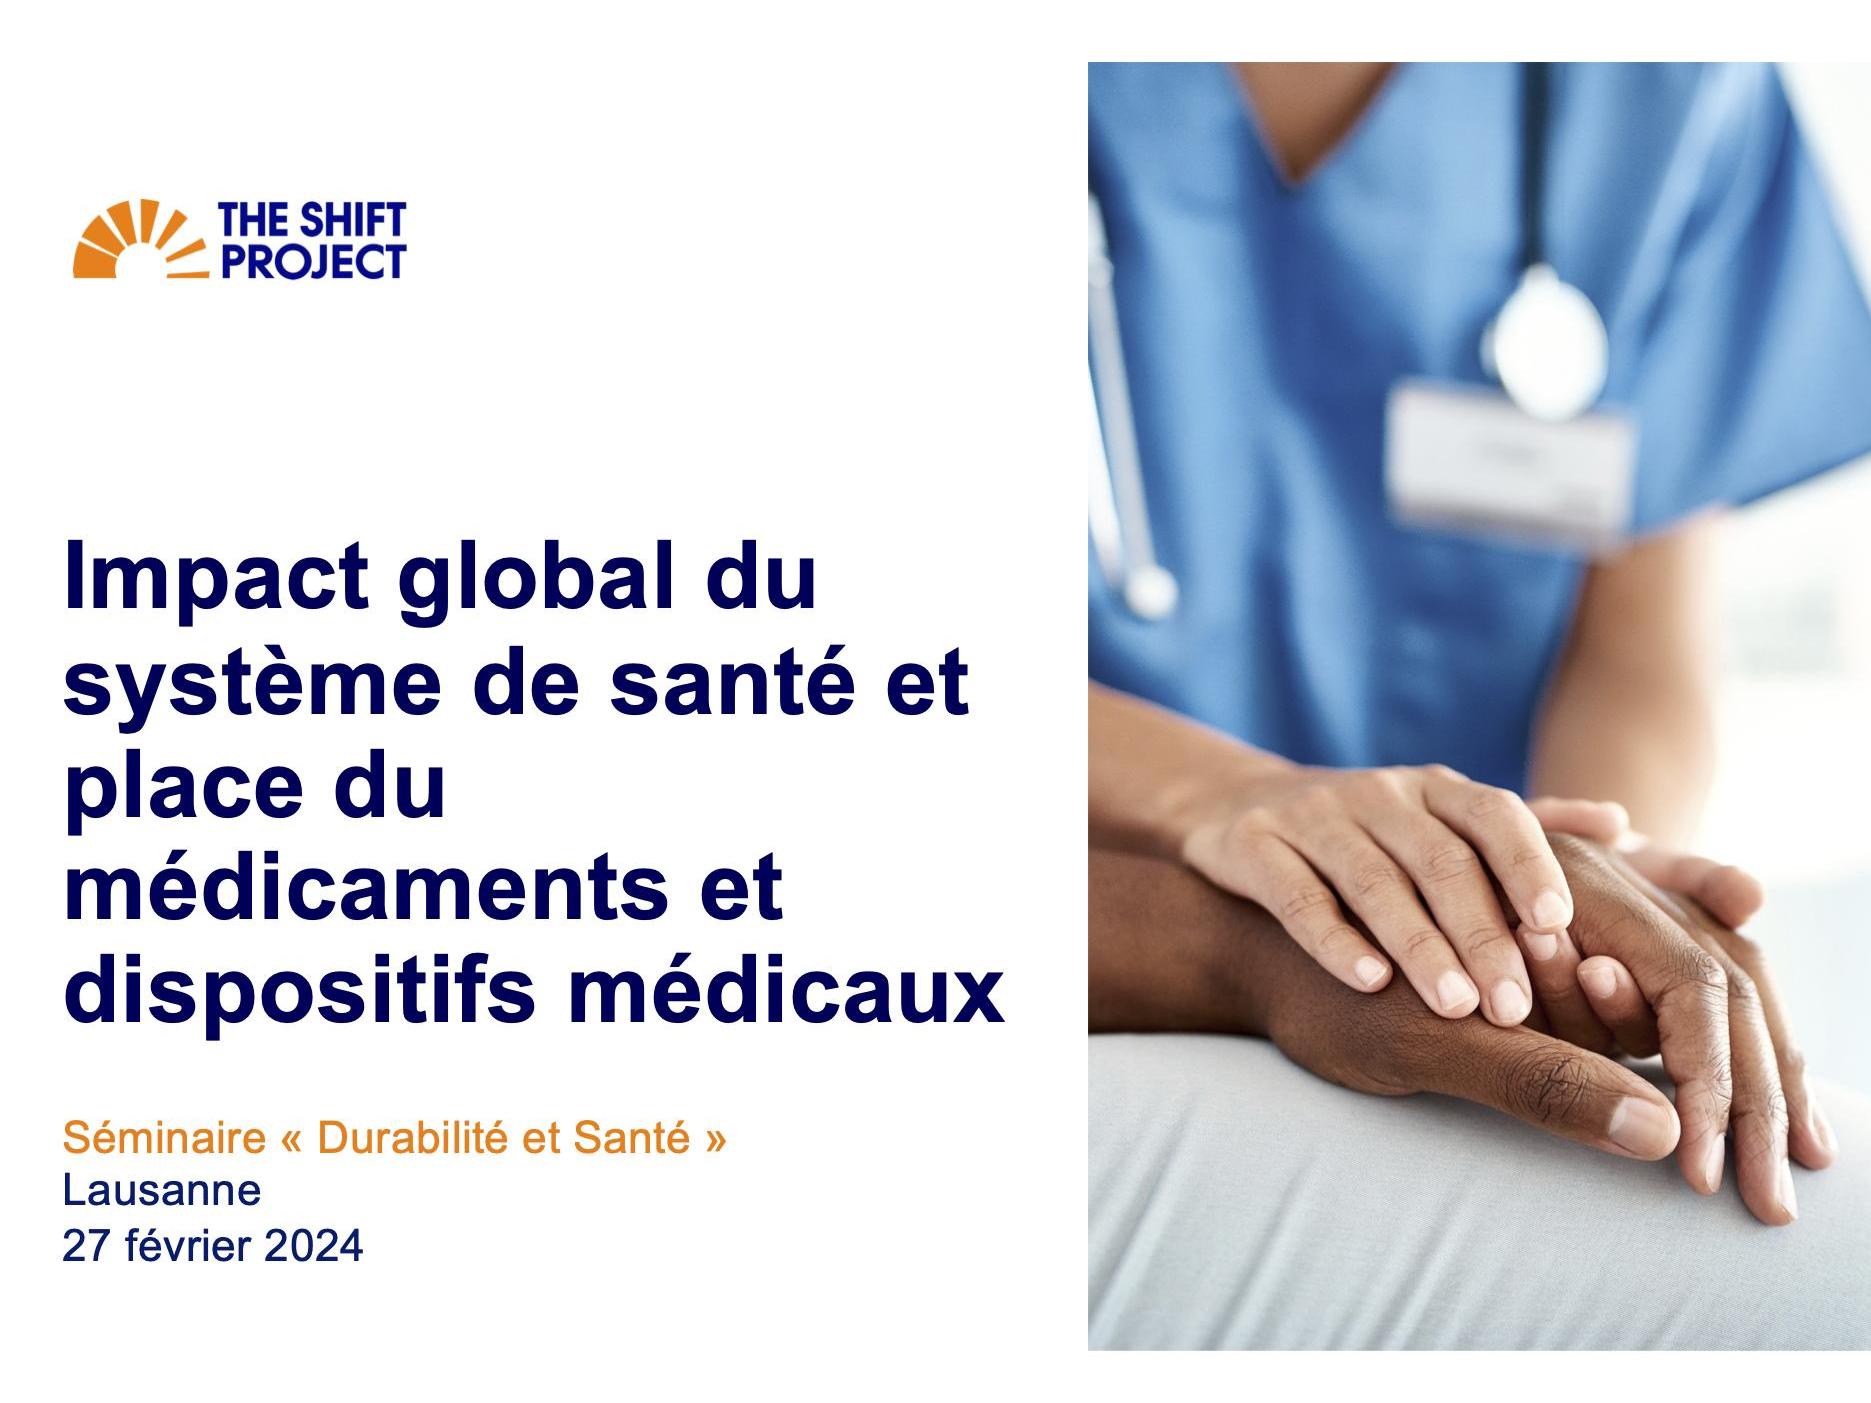 Impact global du système de santé et place du médicaments et dispositifs médicaux - The Shift Project (France)